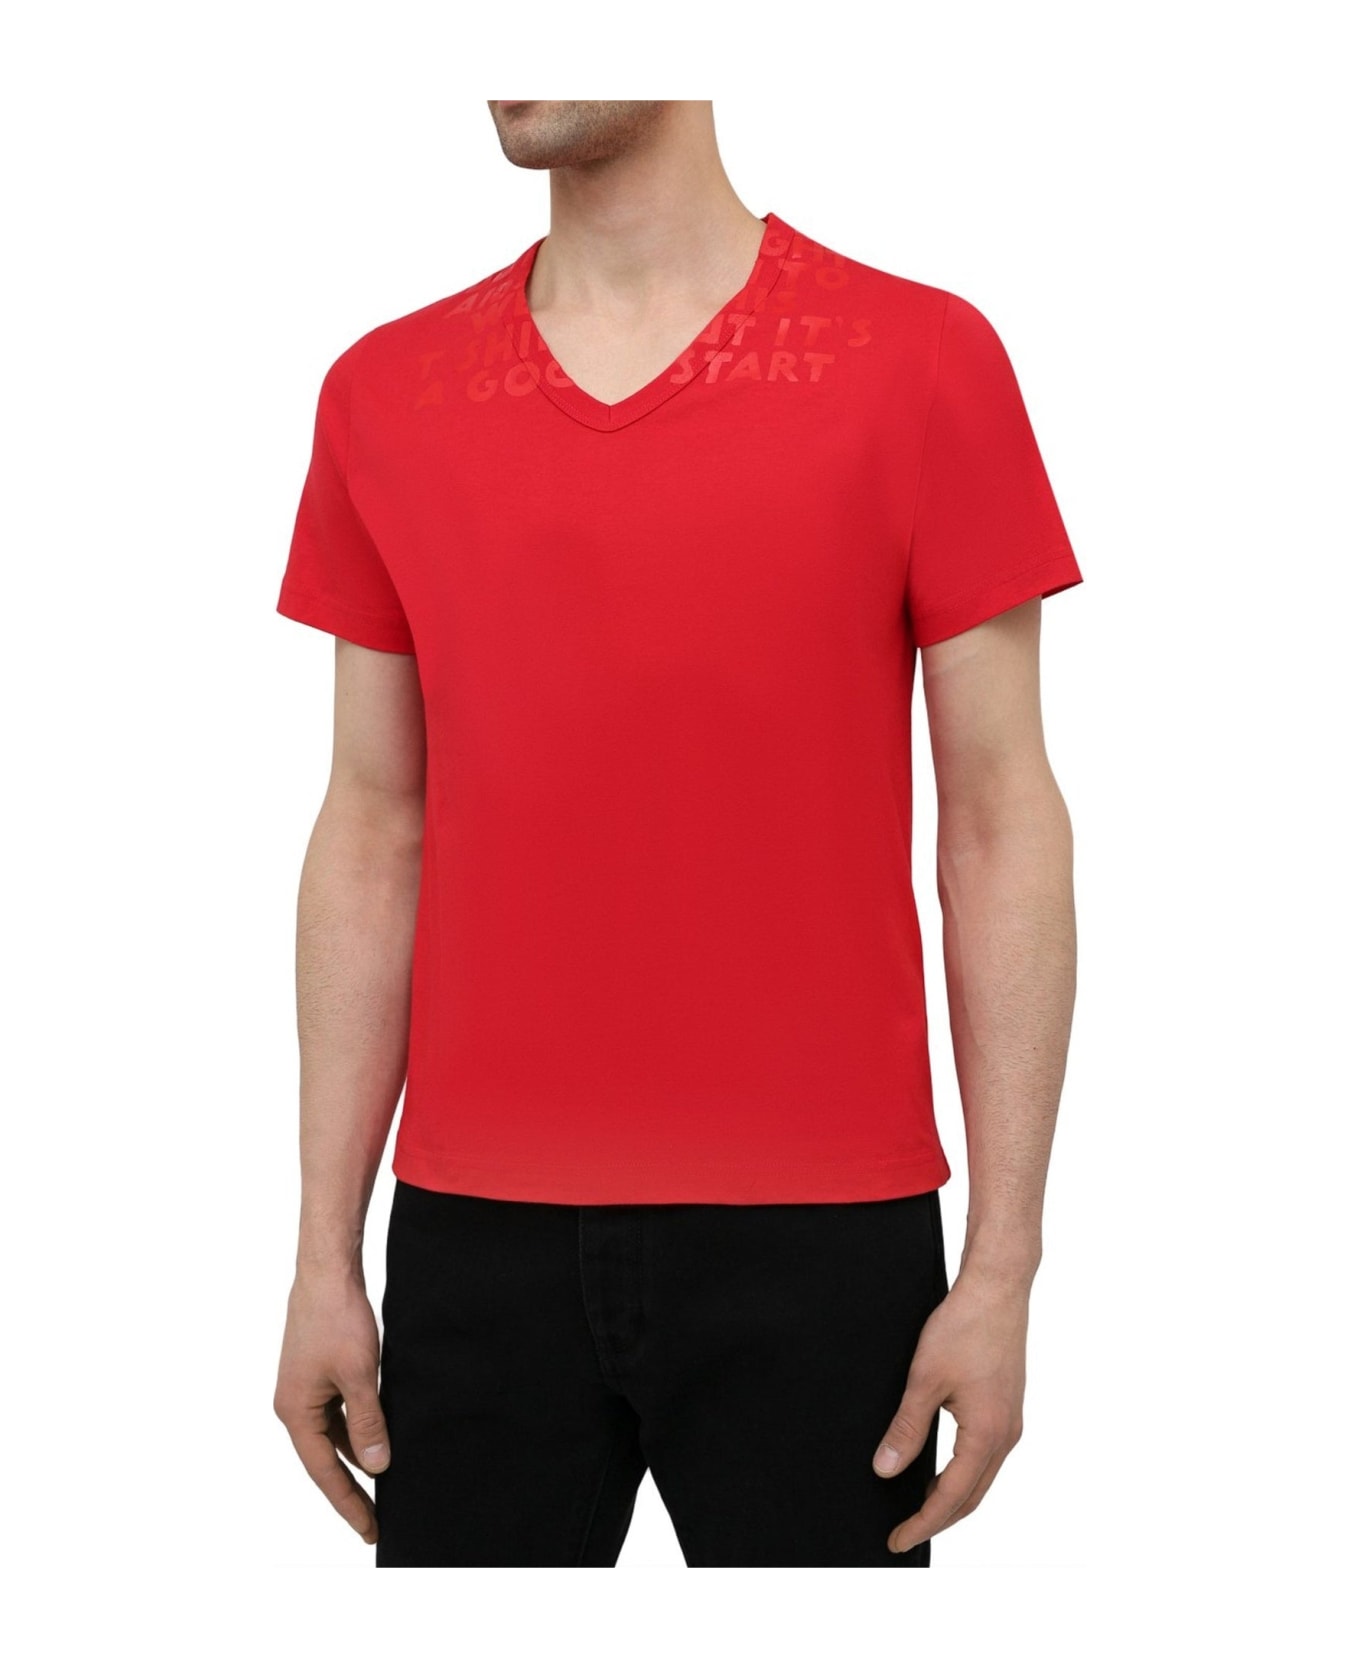 Maison Margiela Cotton T-shirt - Red